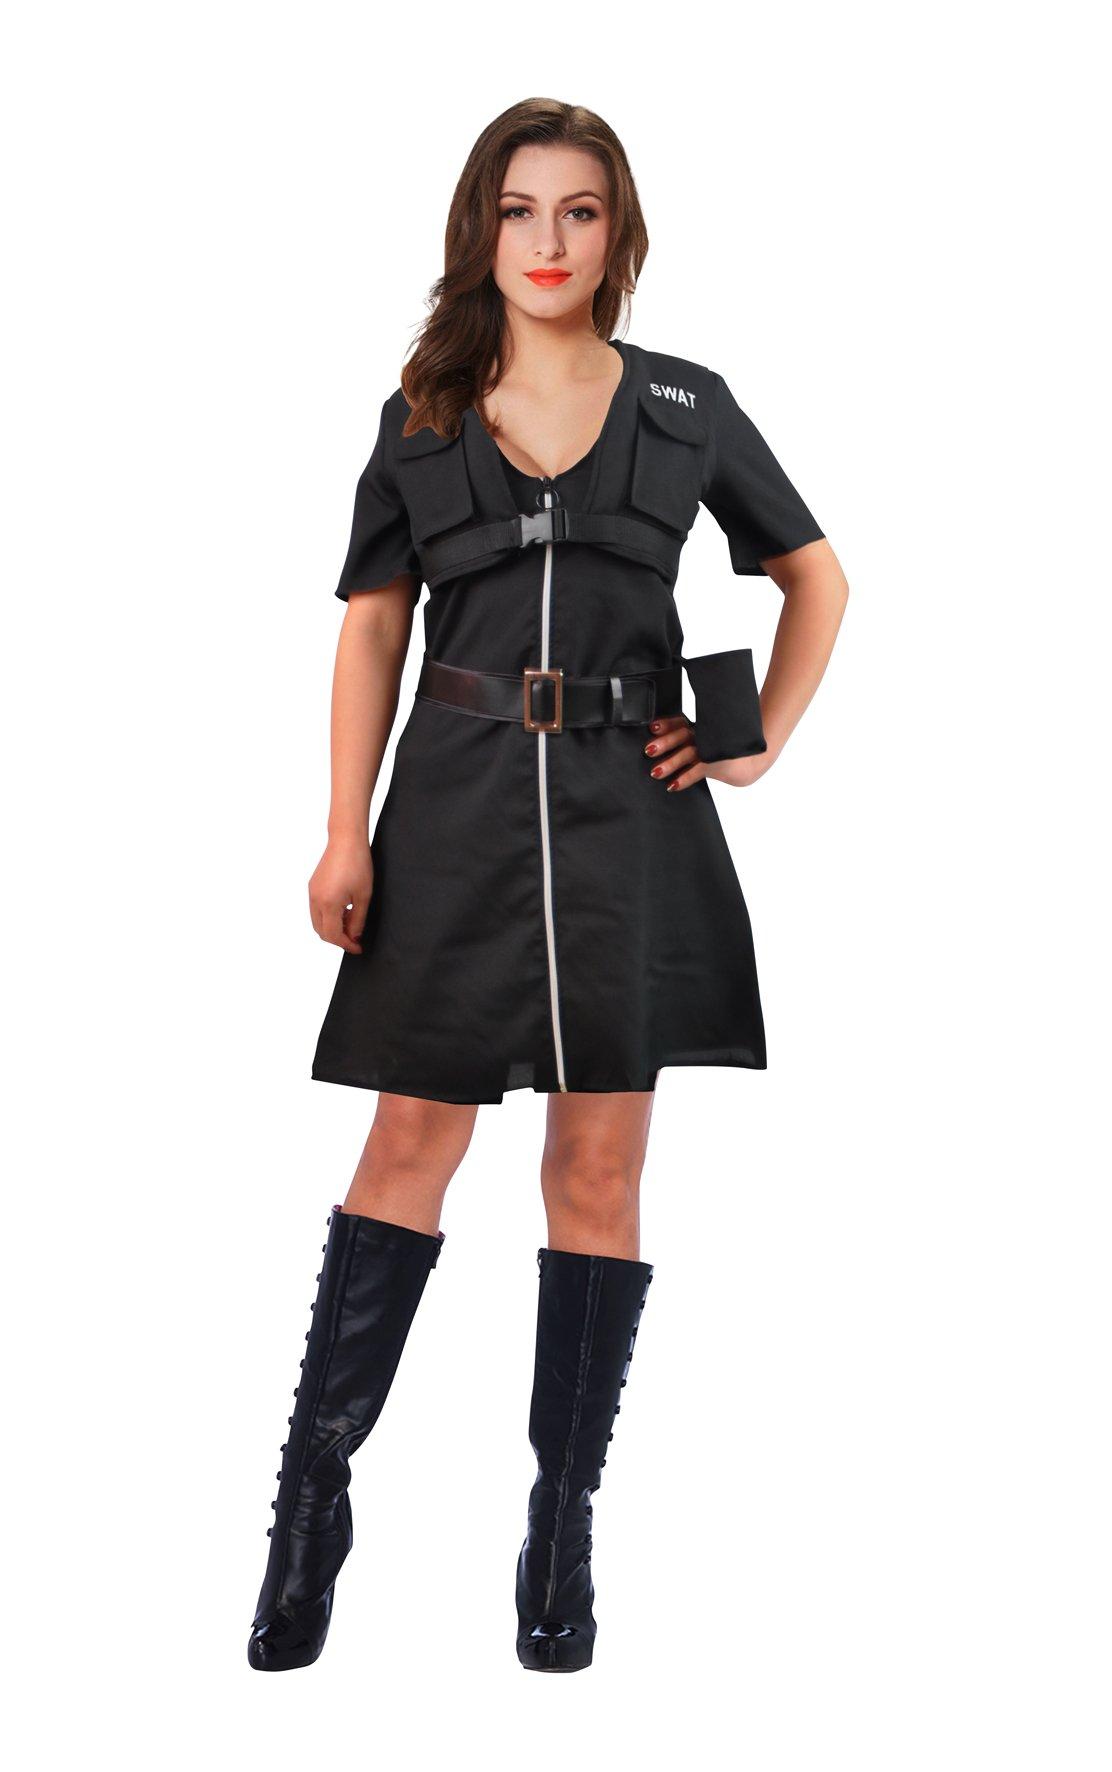 Andrea Moden FA KE Swat Girl Kostüm für Damen SWAT-Girl 